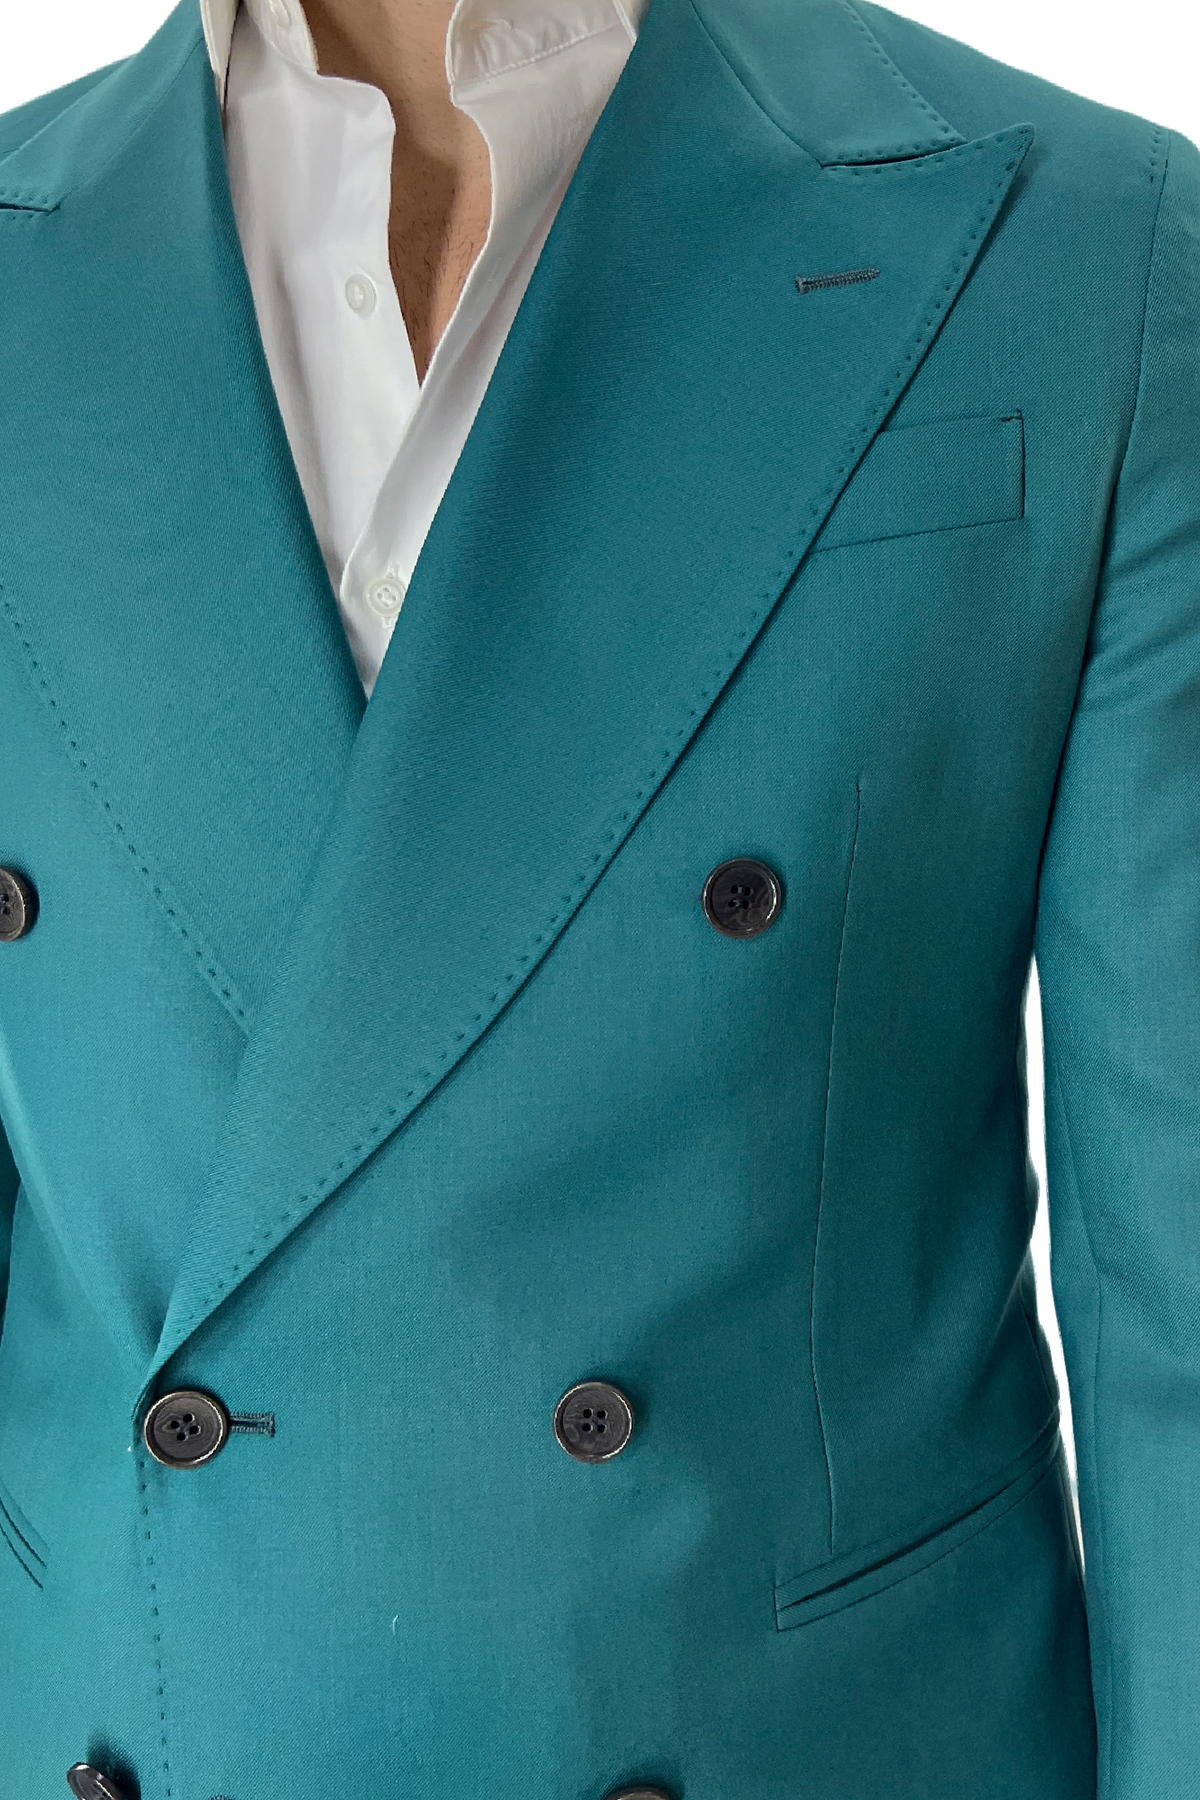 Abito uomo verde menta con giacca doppiopetto e pantalone vita alta in fresco lana 100% tasche a filo Holland & Sherry